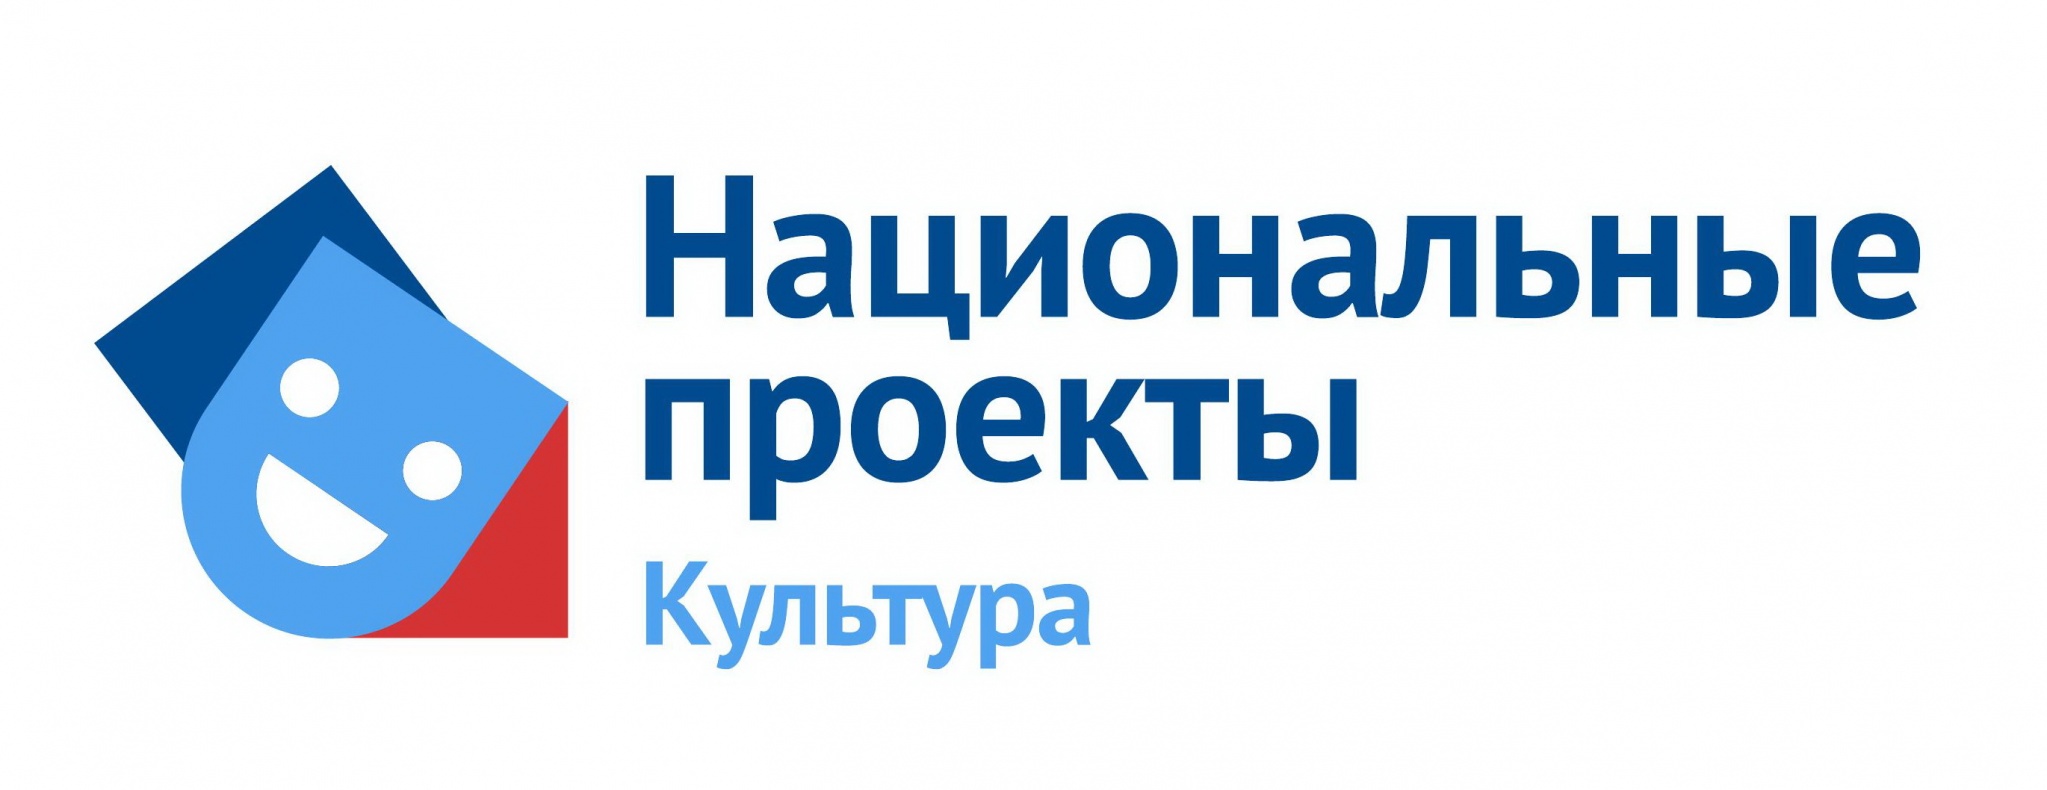 Логотип Нацпроекта.jpg